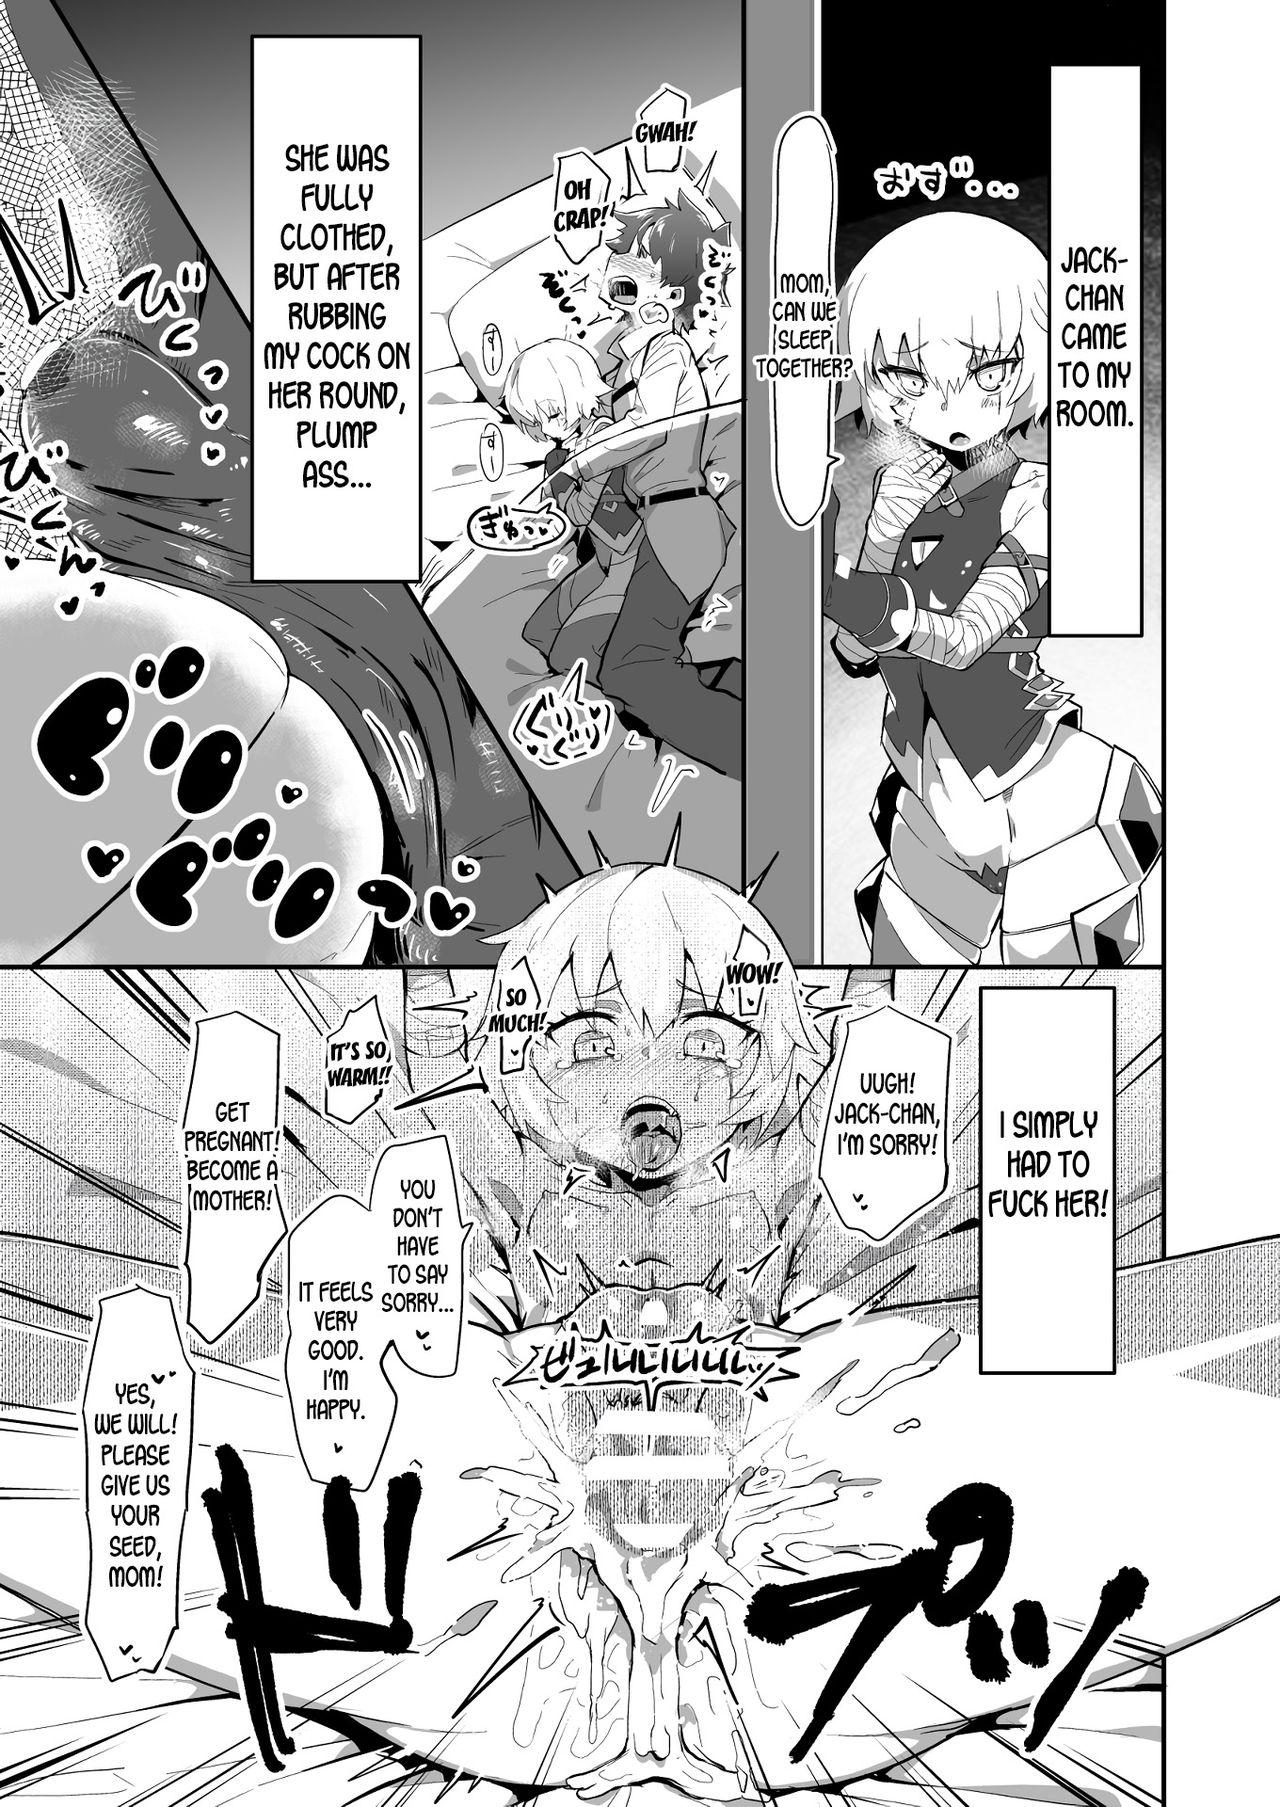 Pretty Shinshin-san random encounter - Fate grand order Ghetto - Page 2